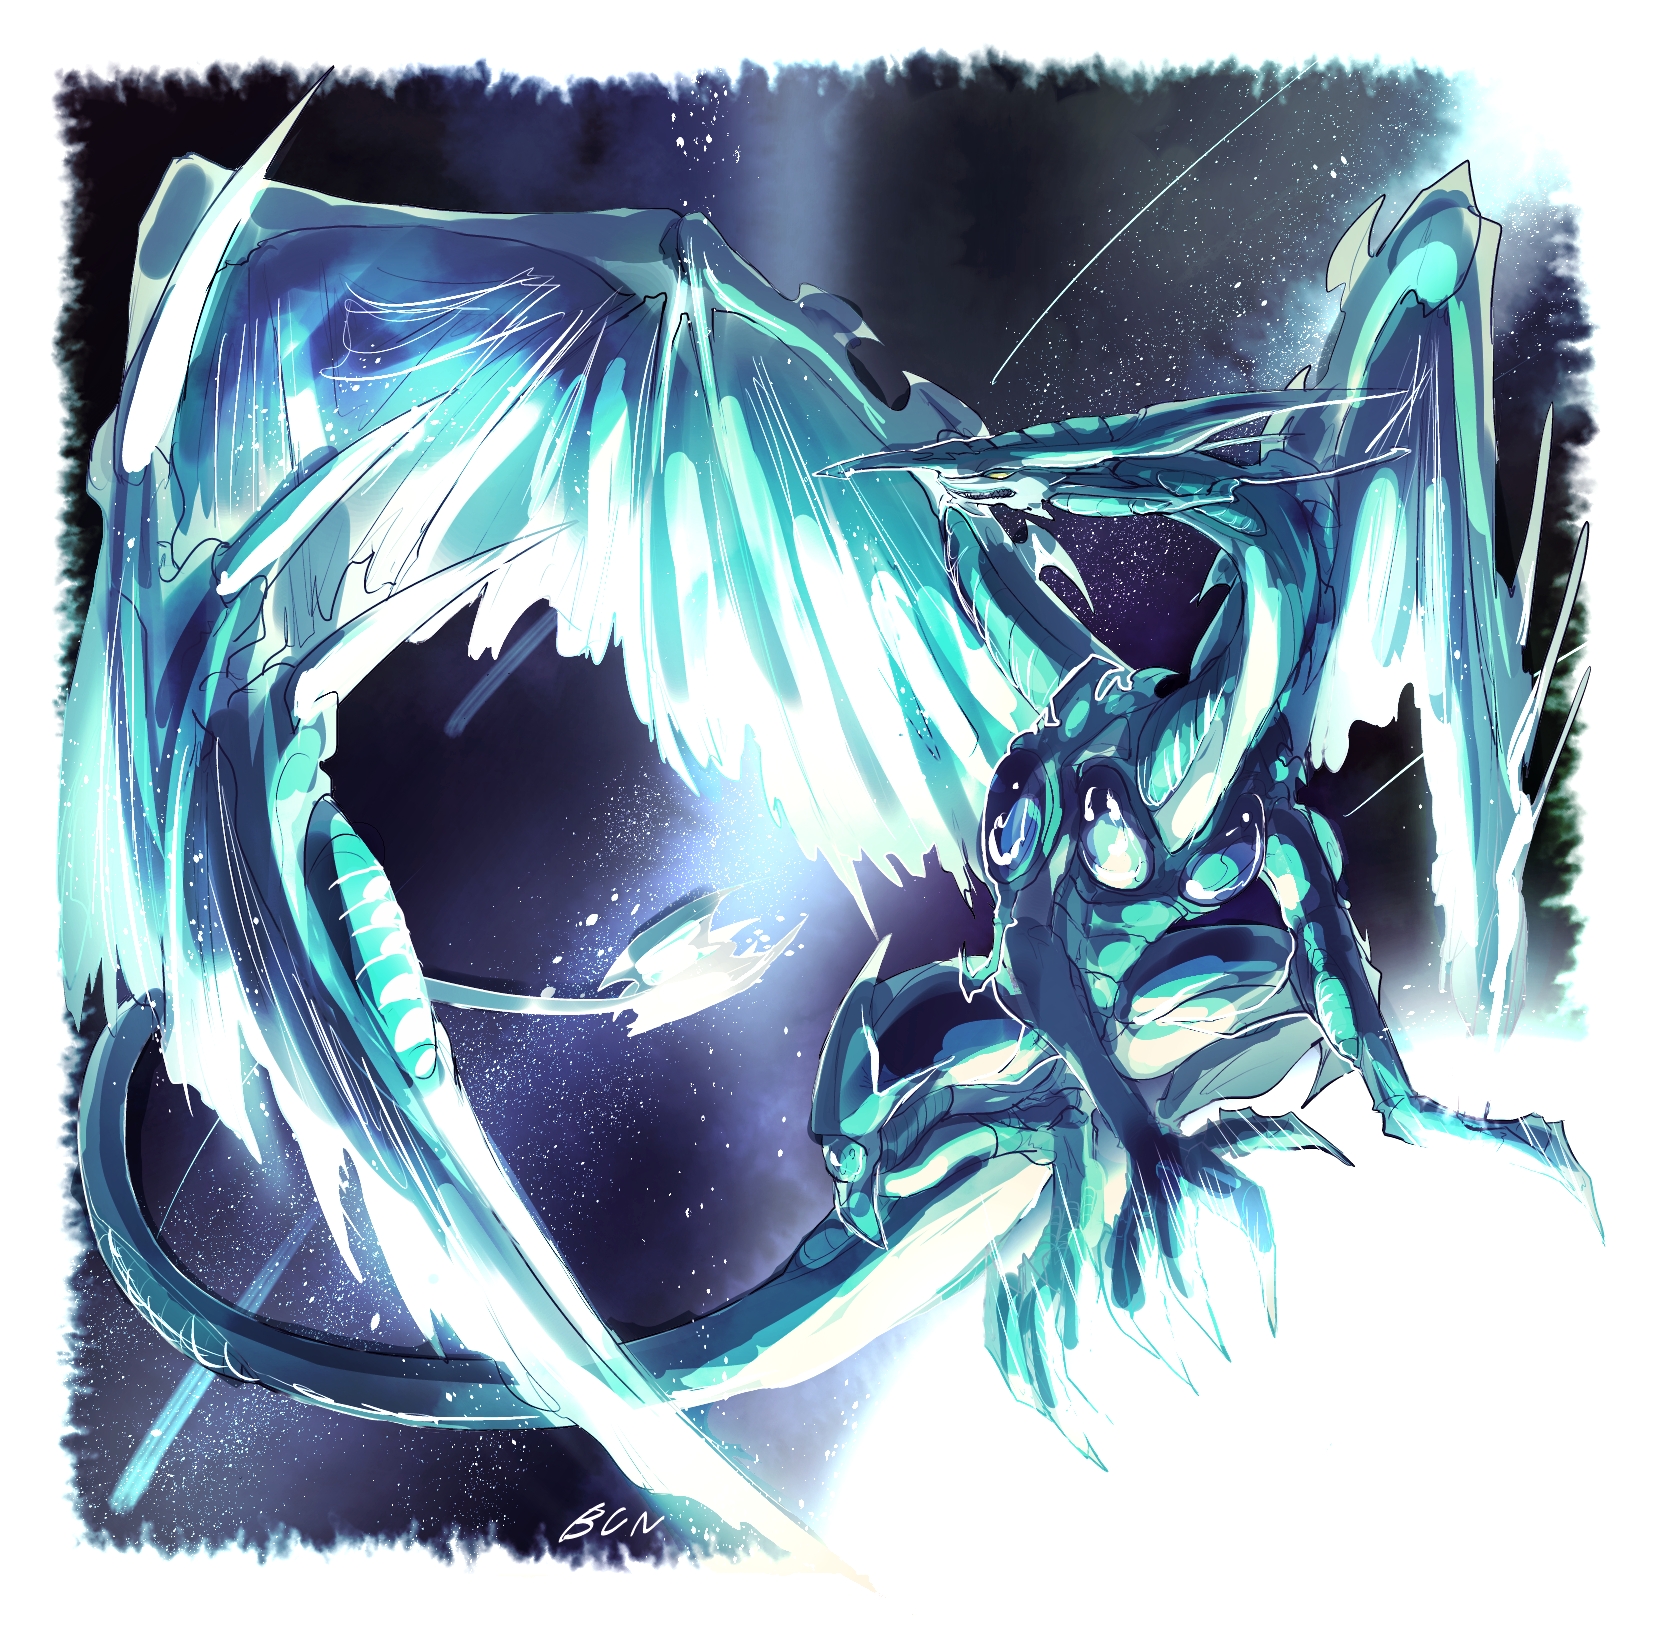 Anime Yu Gi Oh Yu Gi Oh 5Ds Trading Card Games Stardust Dragon Dragon Artwork Digital Art Fan Art 1660x1630